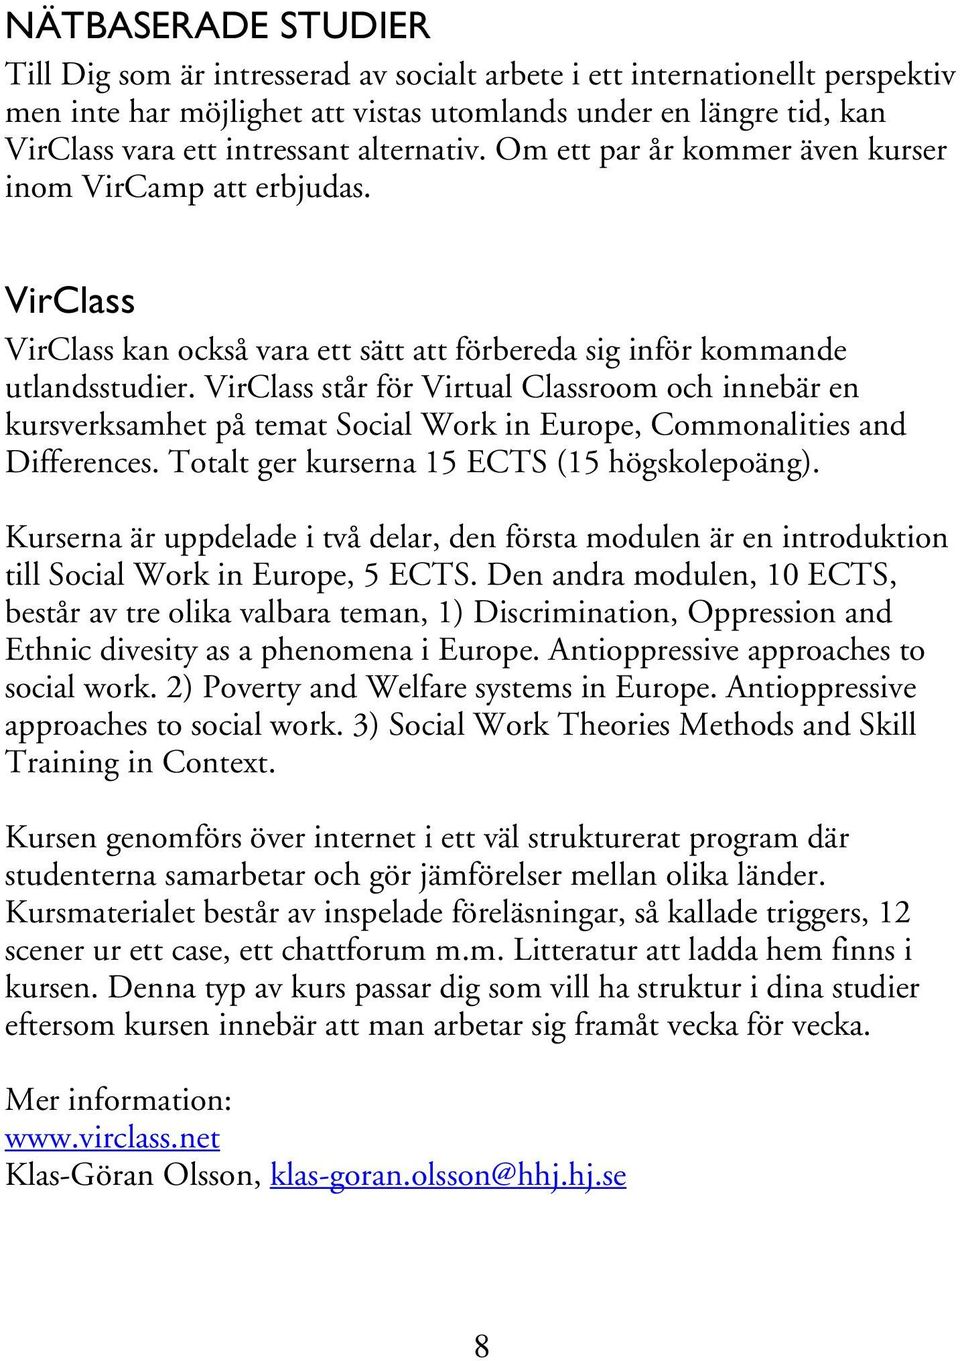 VirClass står för Virtual Classroom och innebär en kursverksamhet på temat Social Work in Europe, Commonalities and Differences. Totalt ger kurserna 15 ECTS (15 högskolepoäng).